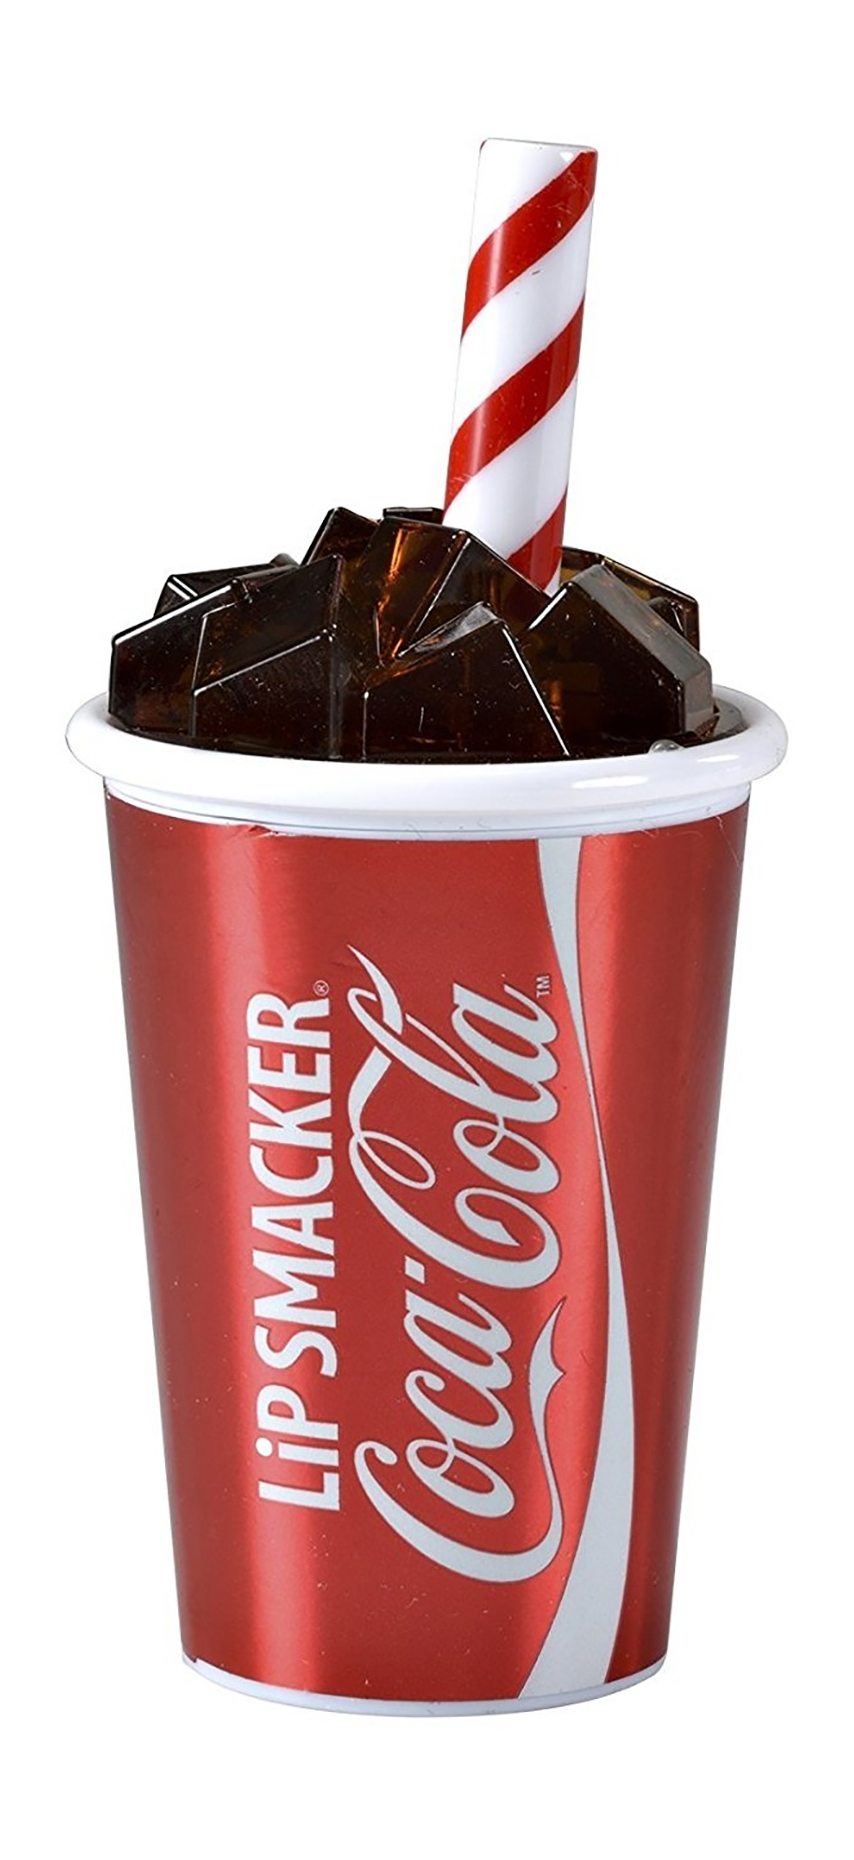 Бальзам для губ Lip Smacker Coca-Cola Cup Lip Balm увлажняющий, с ароматом колы 7,4 г бальзам для губ lip smacker coca cola vanilla lip balm 4г